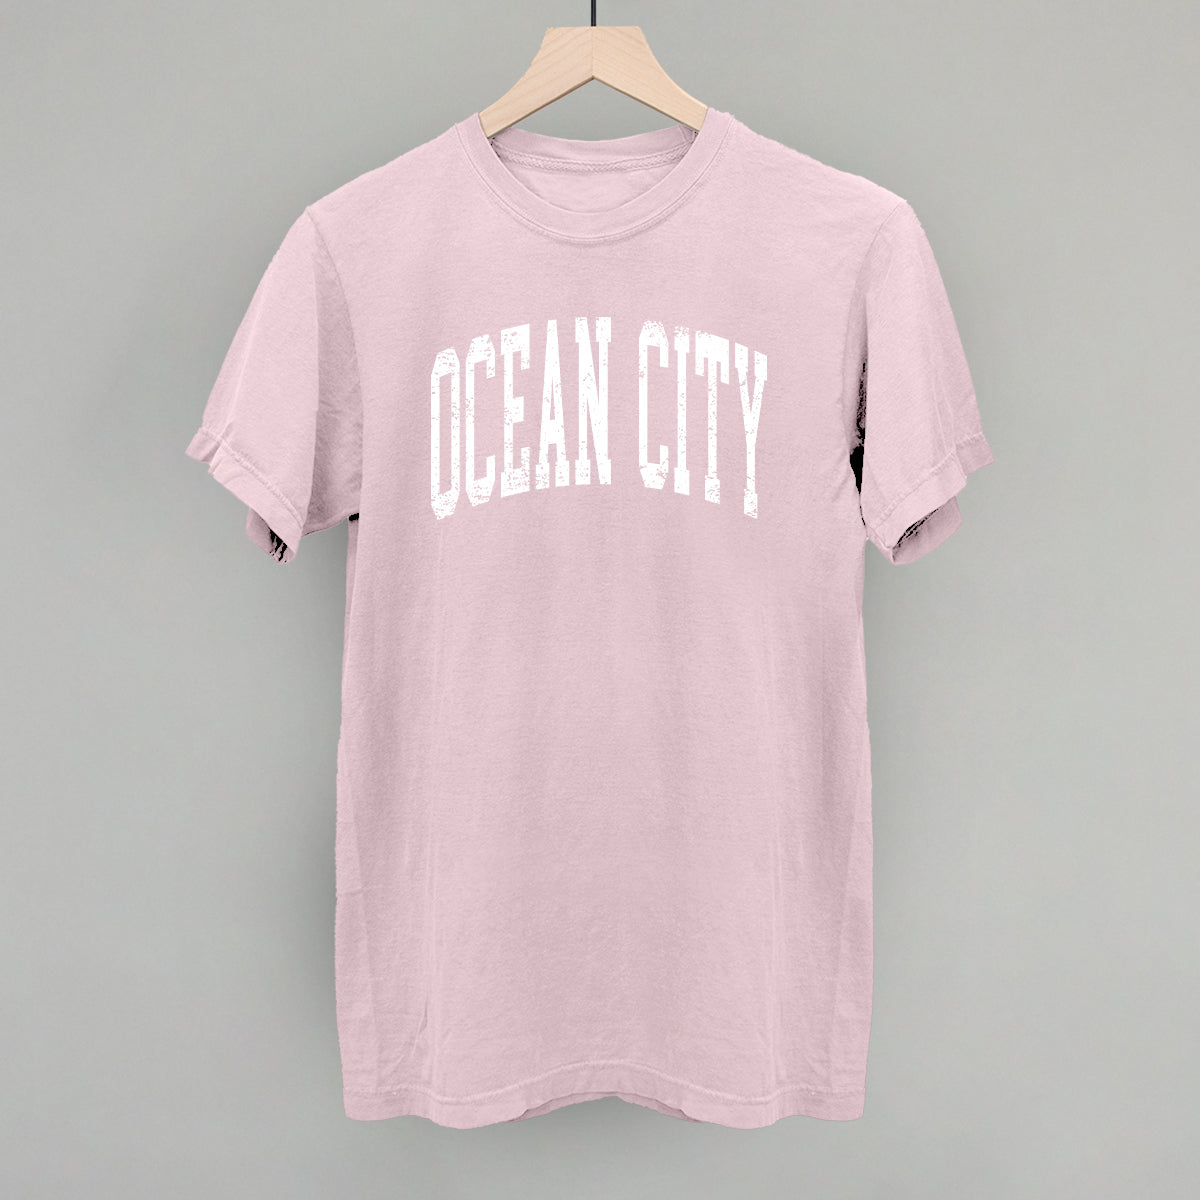 Ocean City Collegiate Distressed